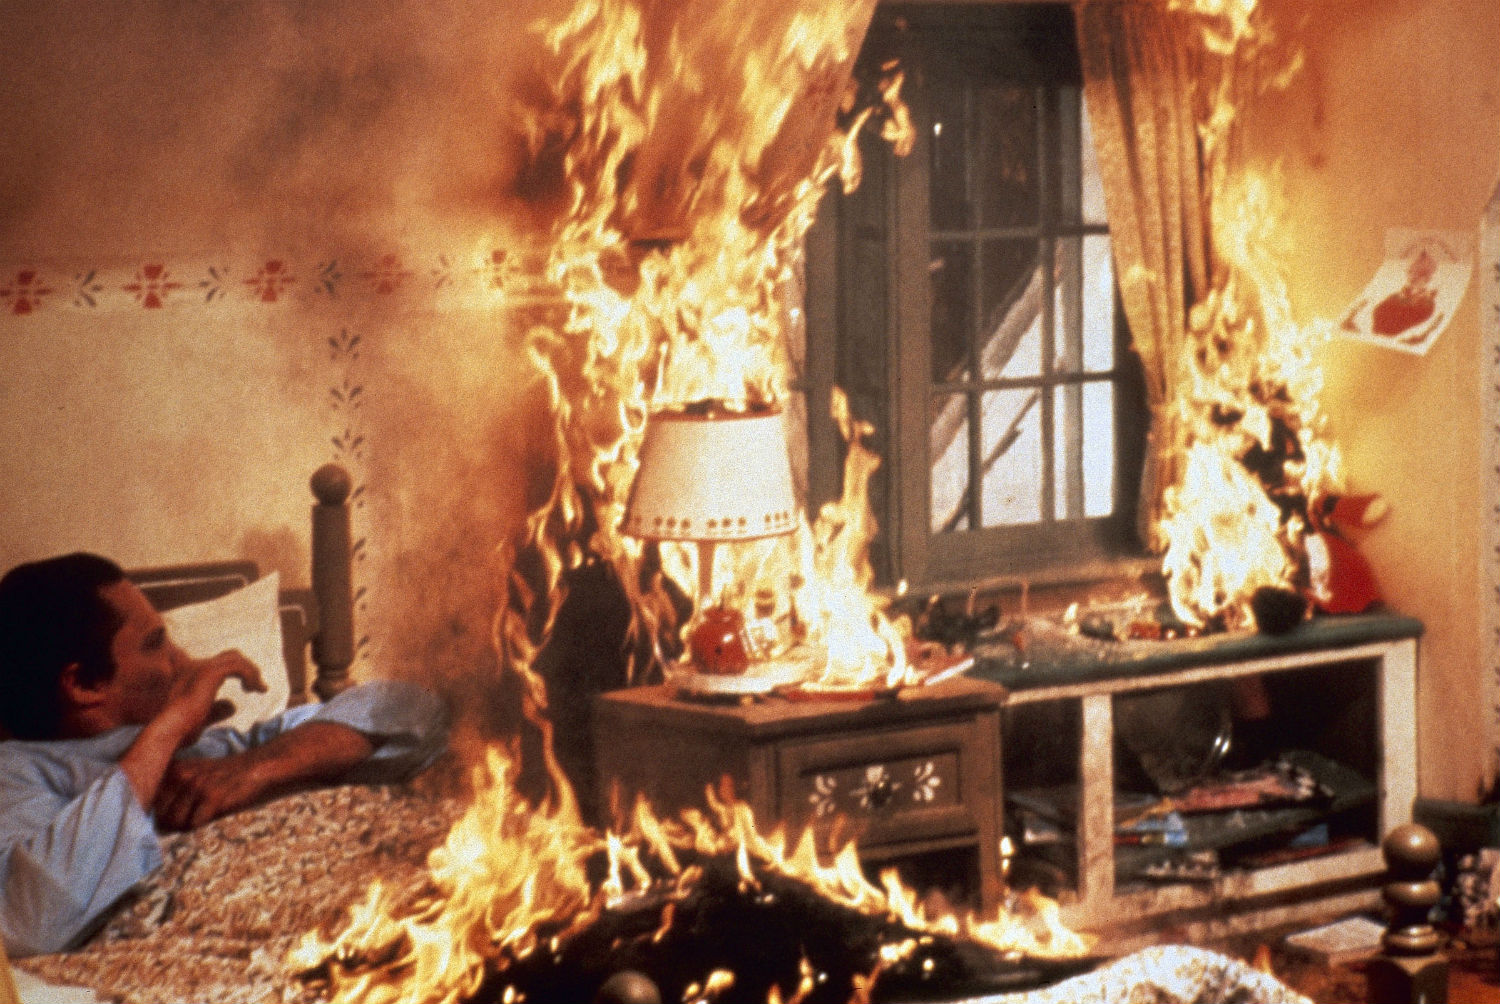 the dead zone fire Stephen king david cronenberg body horror cinema